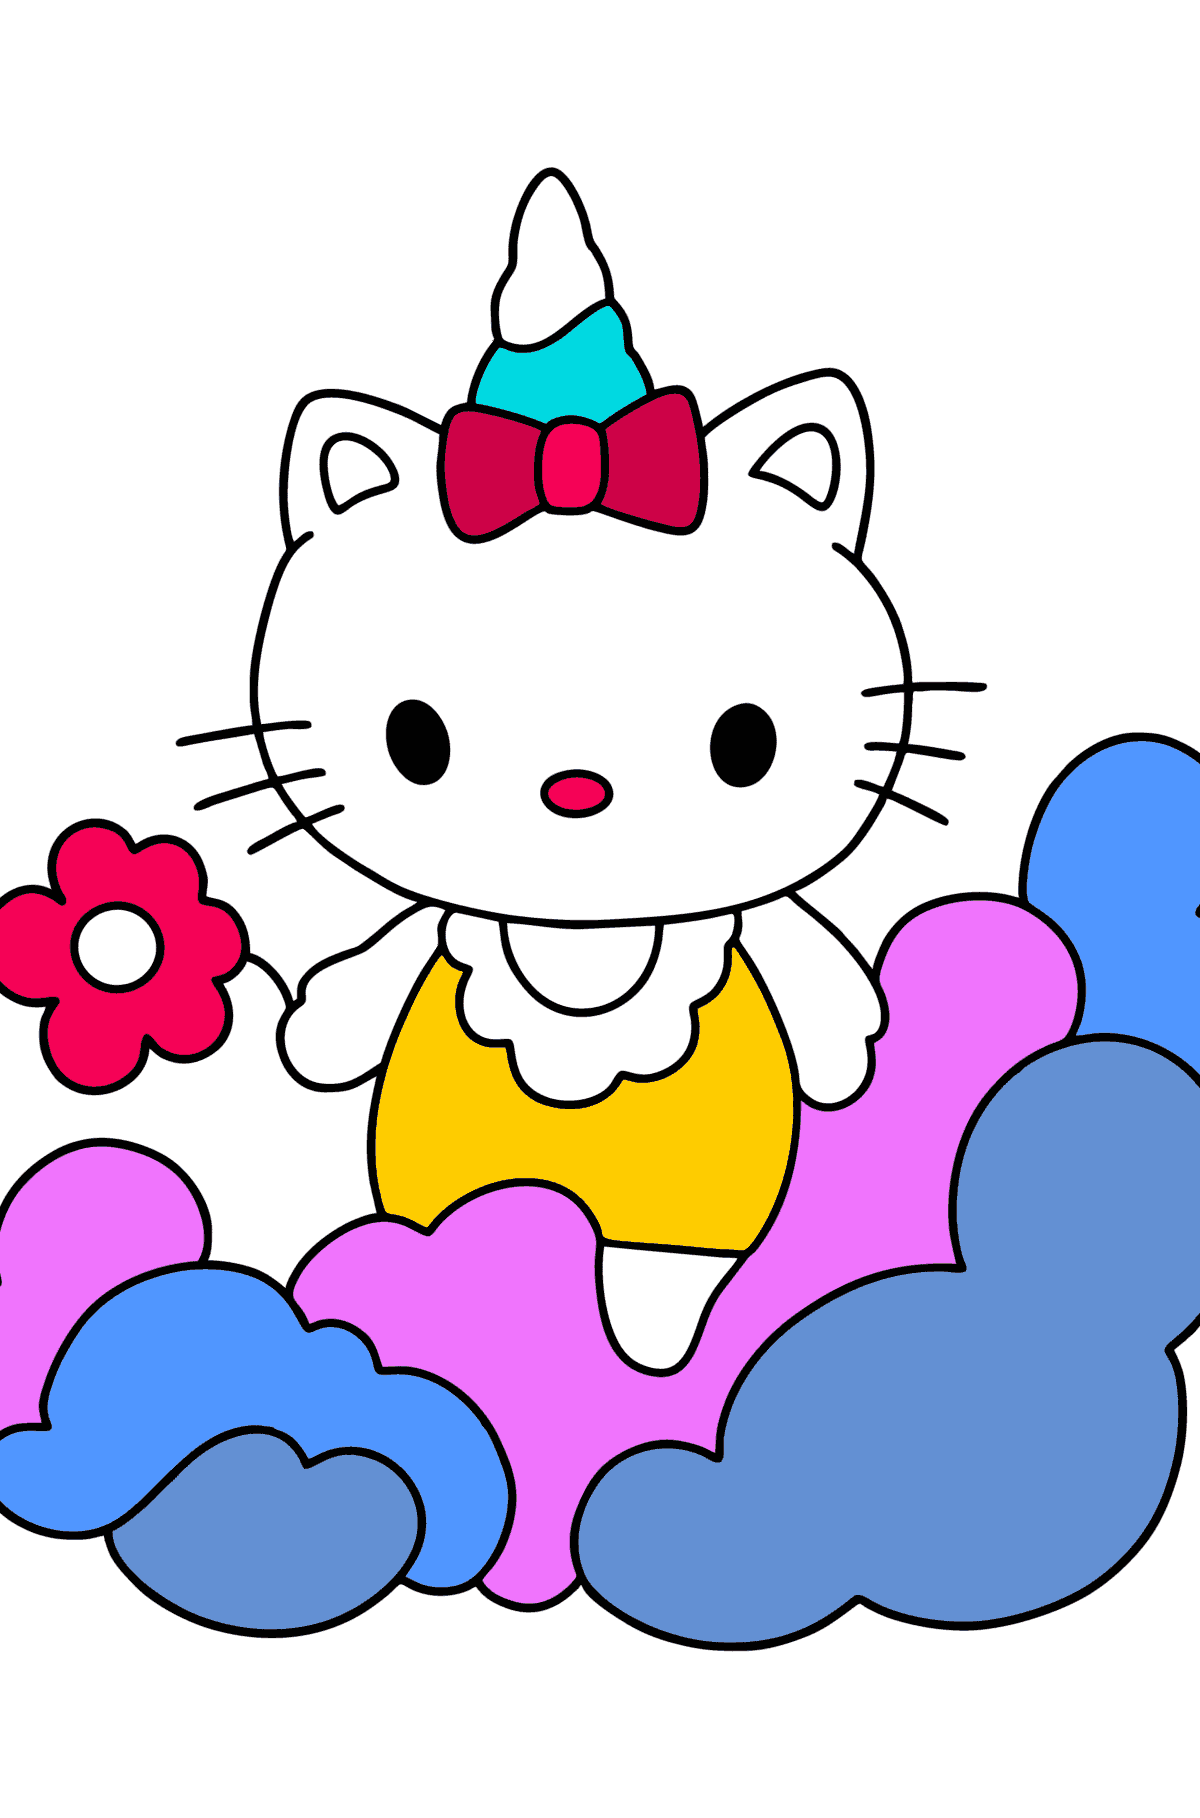 Boyama sayfası Hello Kitty tek boynuzlu at - Boyamalar çocuklar için